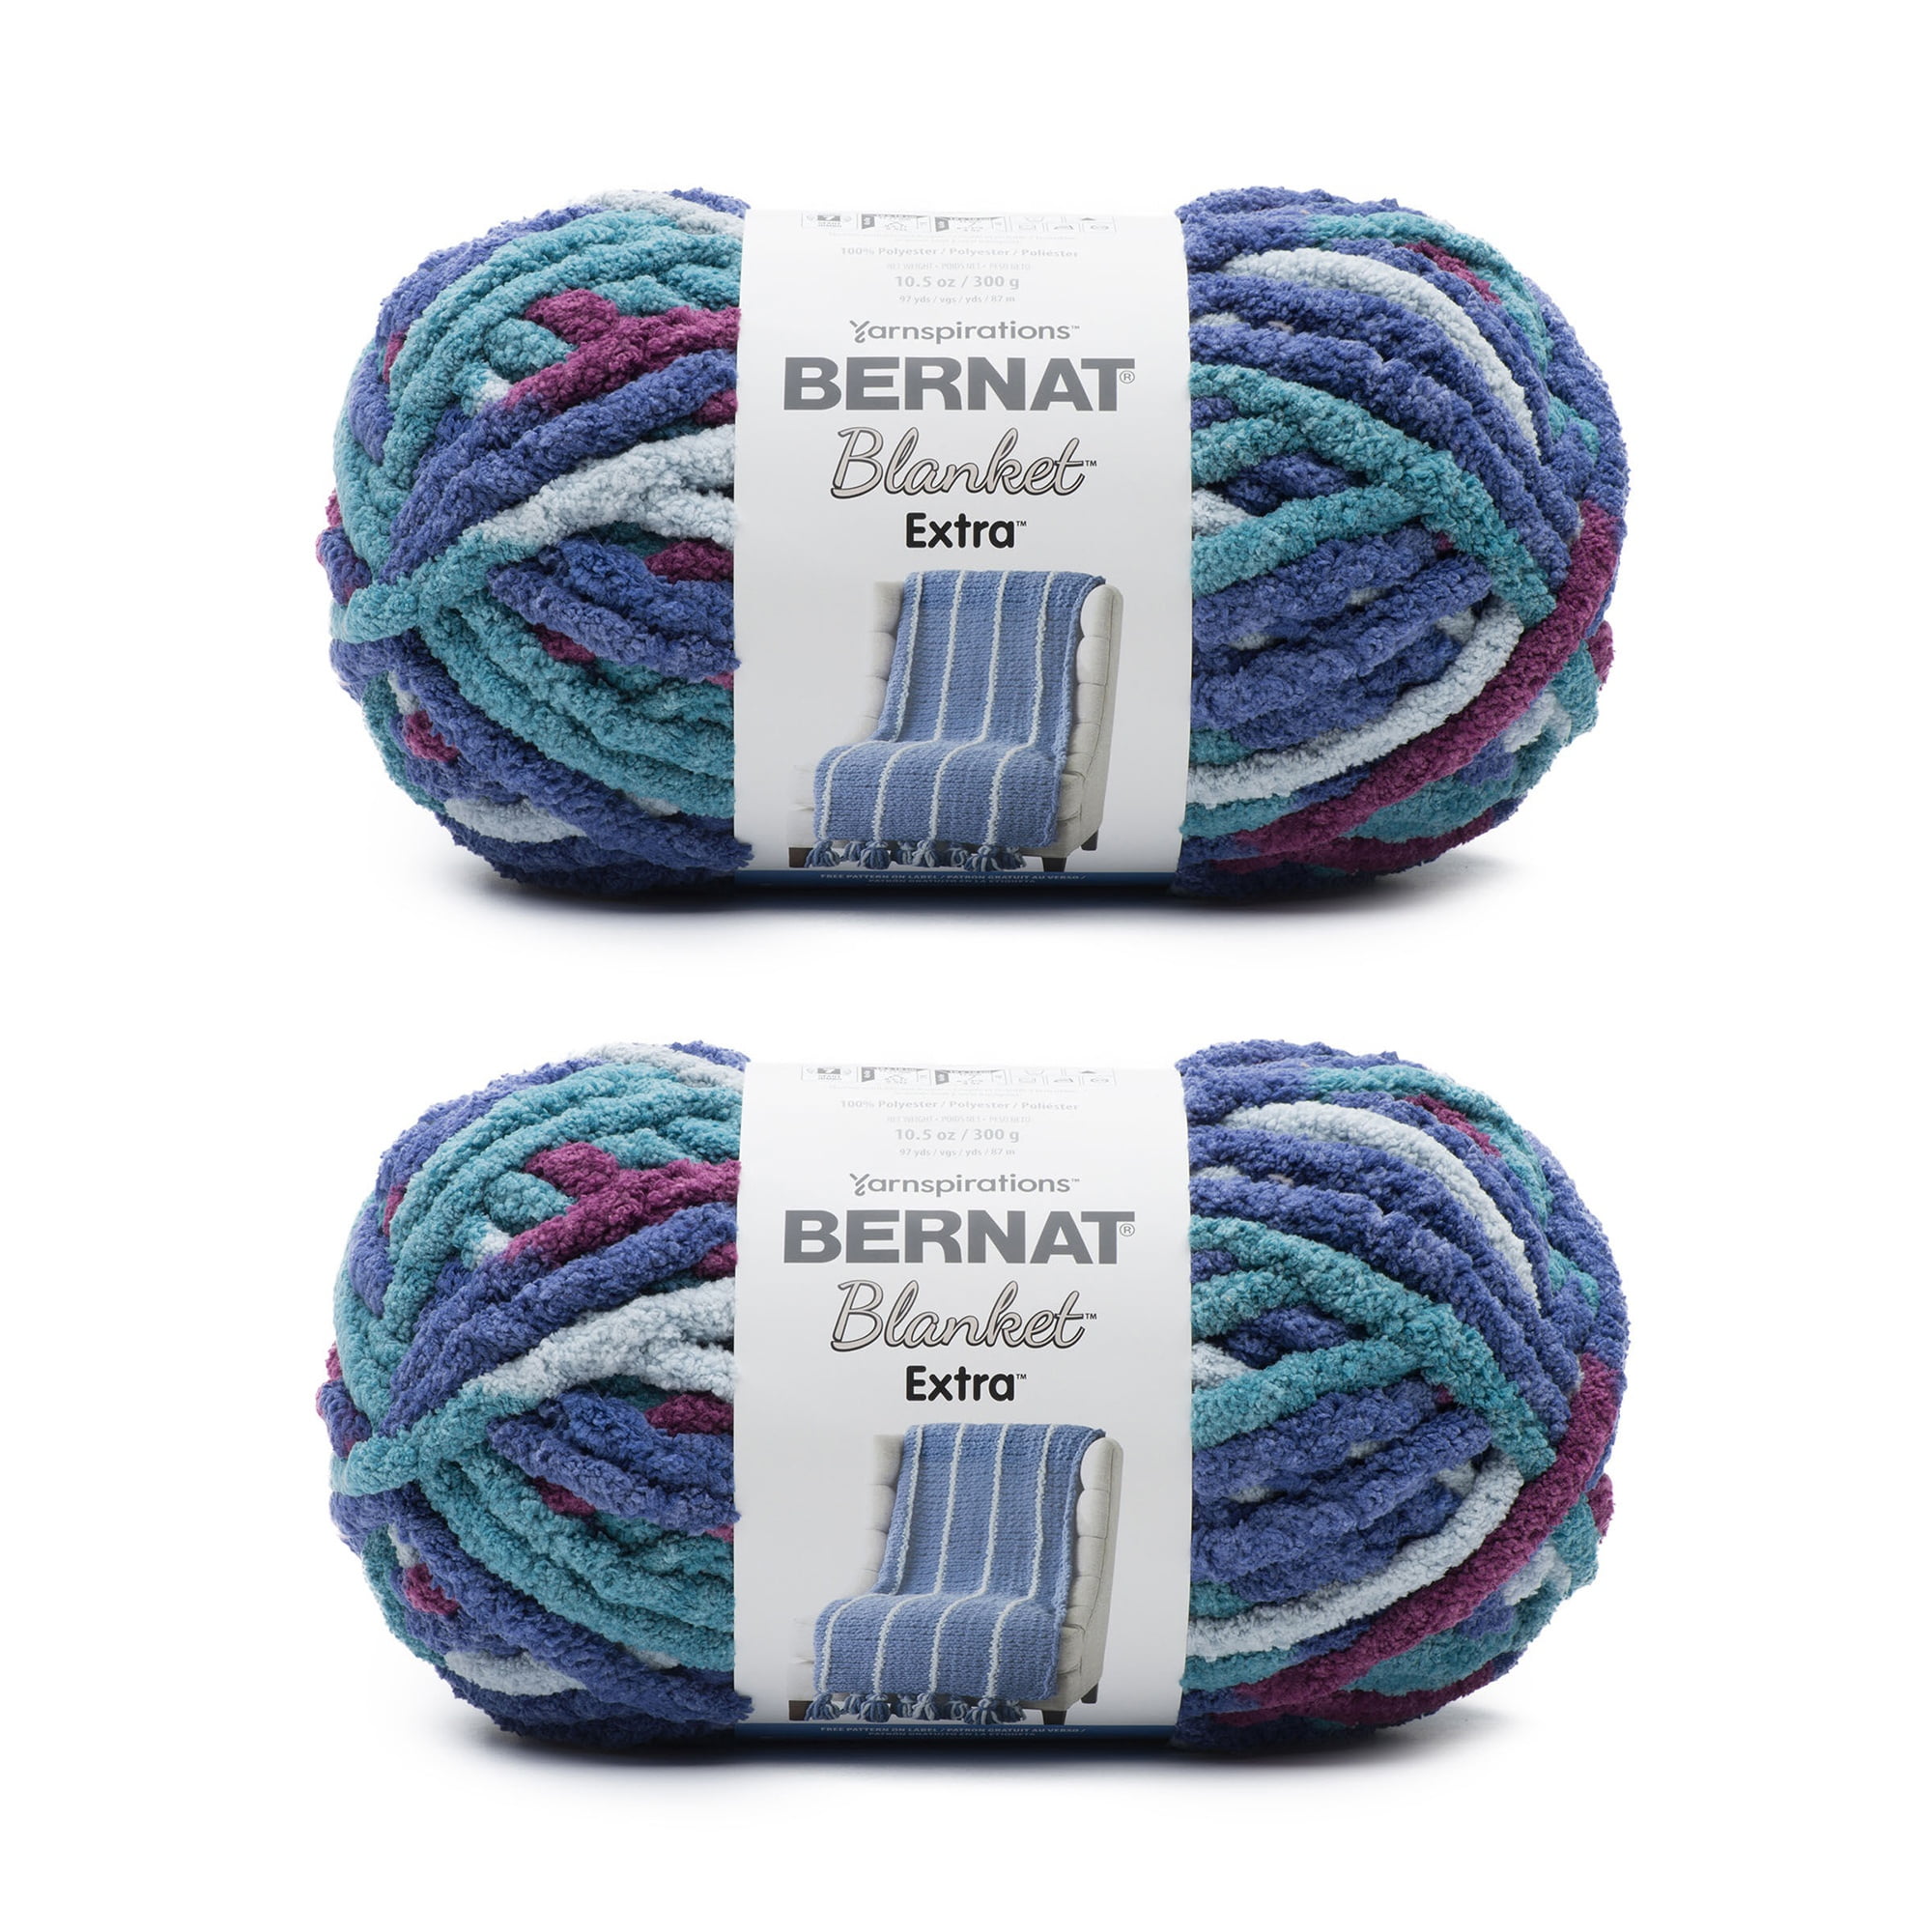 Bernat Blanket Pale Gray Yarn - 2 Pack of 300g/10.5oz - Polyester - 6 Super  Bulky - 220 Yards - Knitting/Crochet